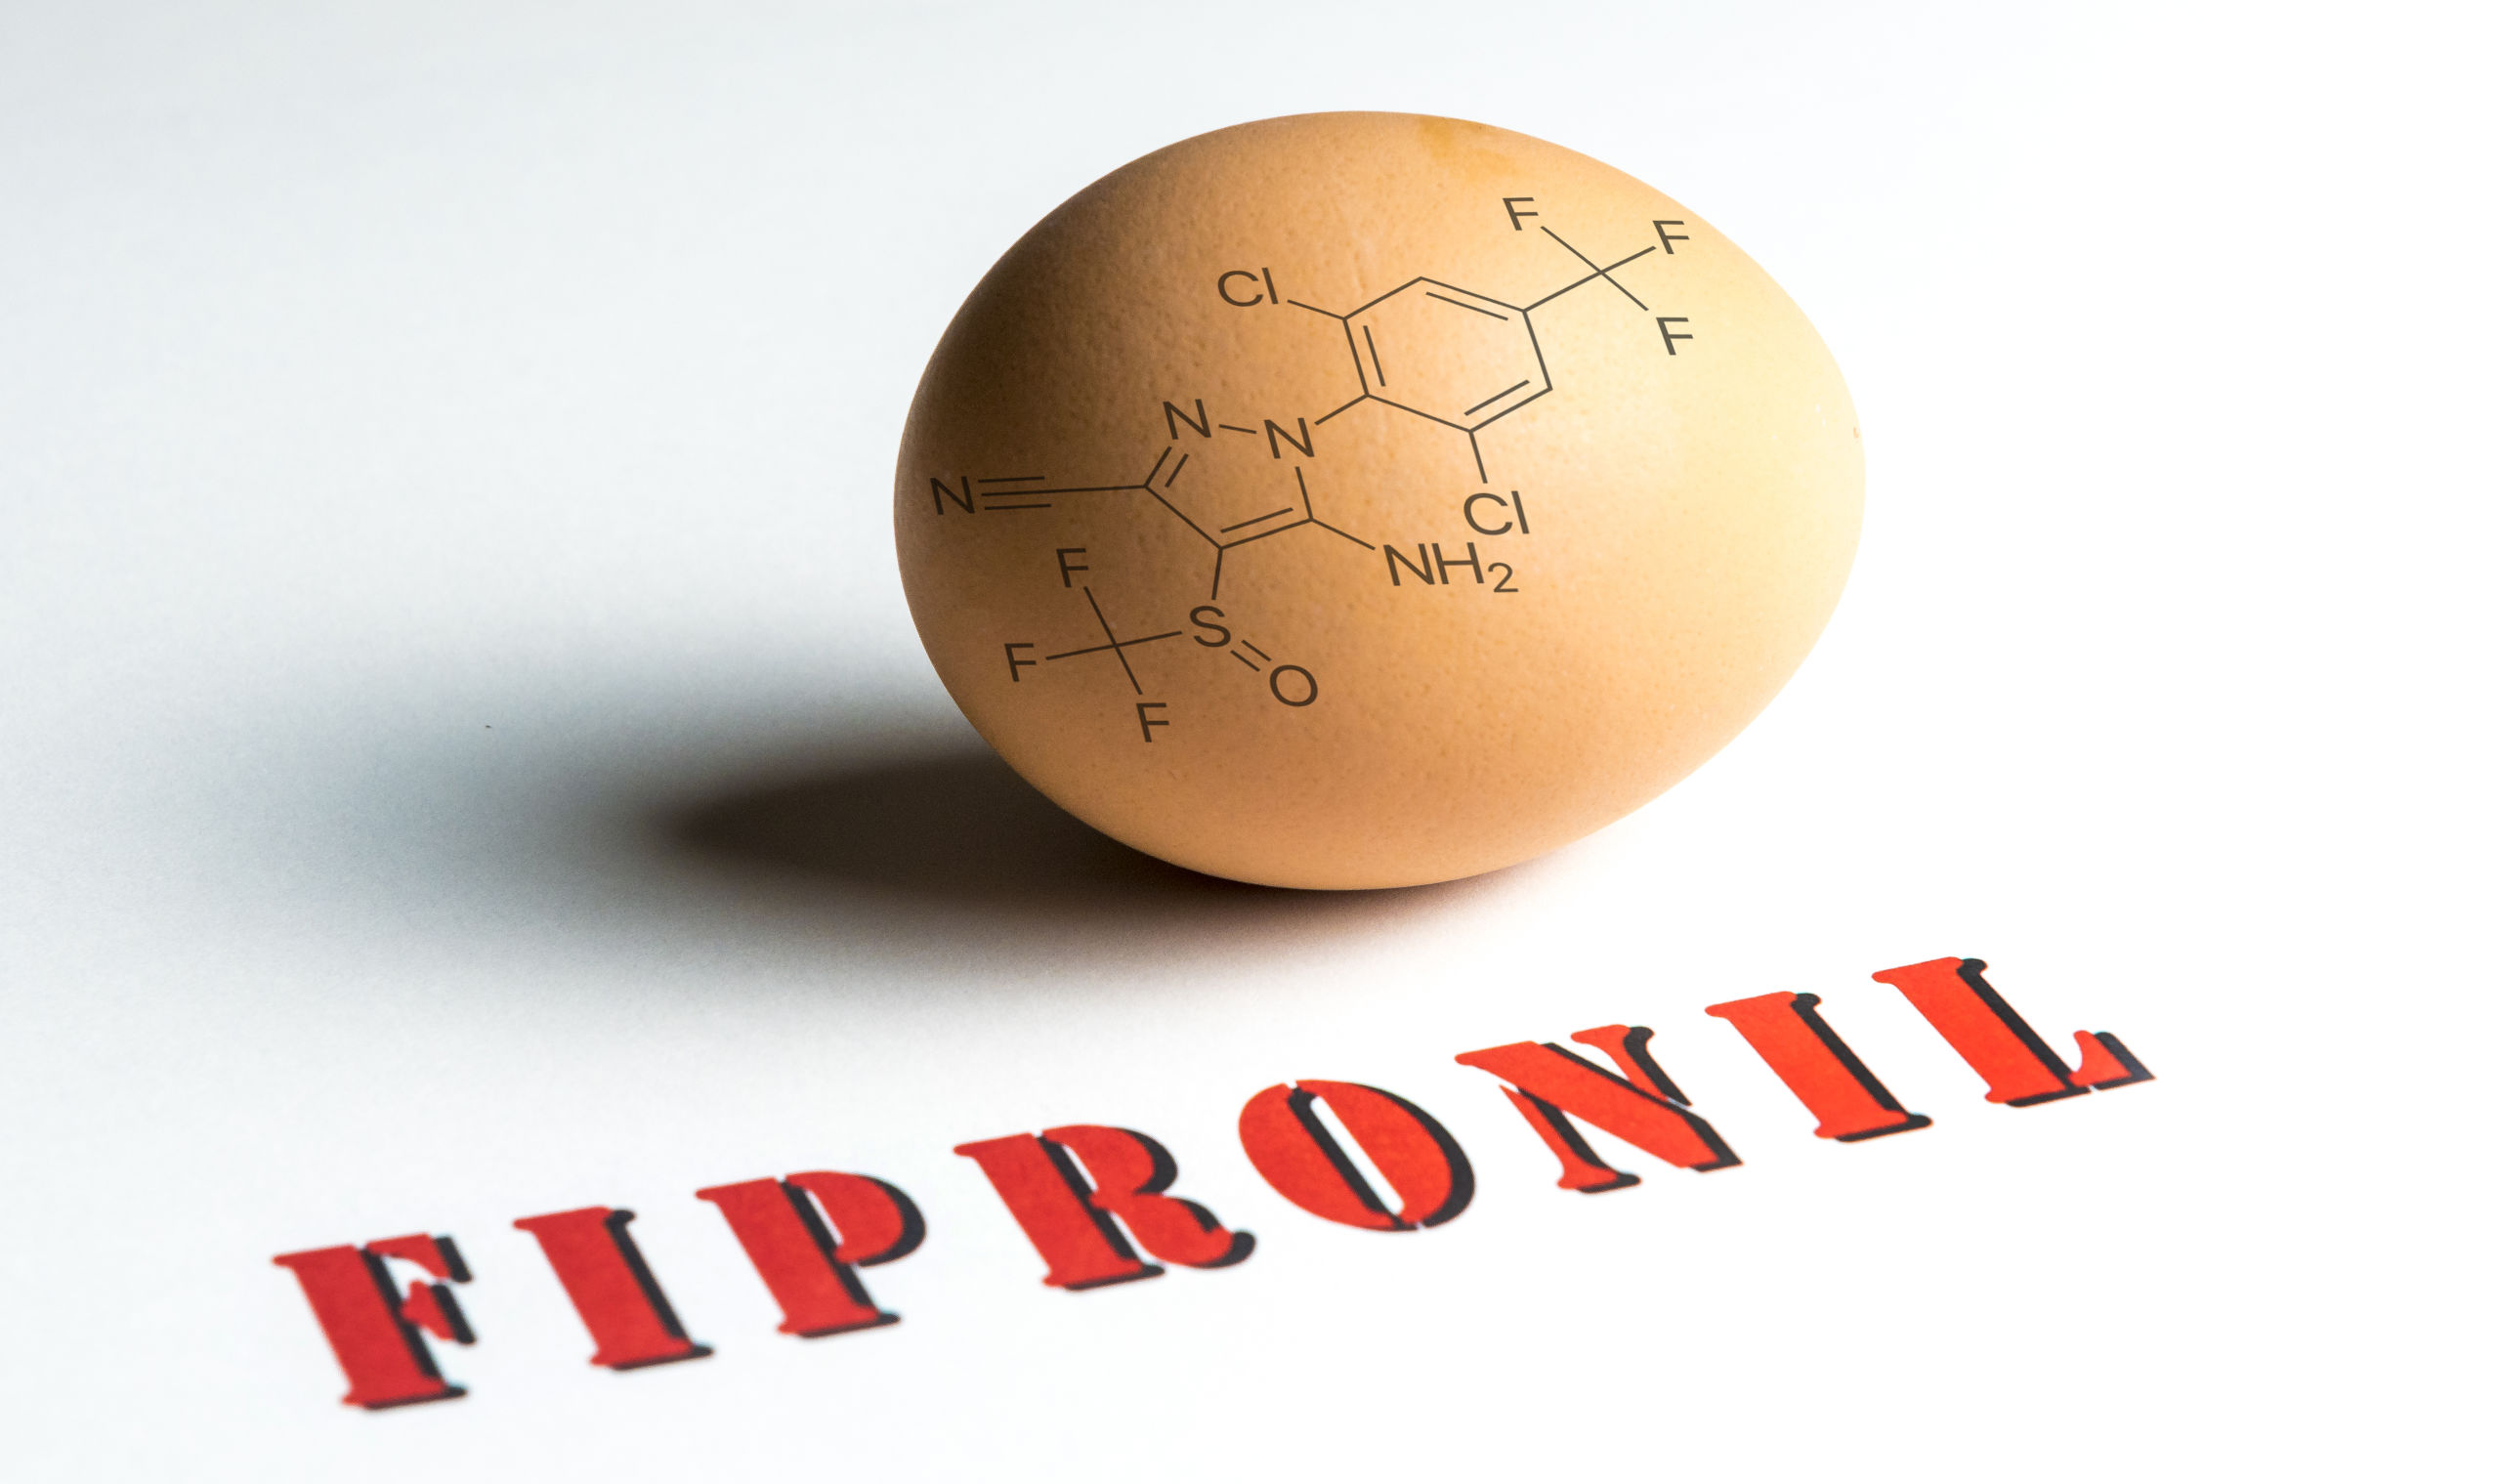 In zeker vijftien landen van de Europese Unie zijn met fipronil besmette eieren teruggevonden. De Europese Commissie wil een overleg over de eiercrisis. 